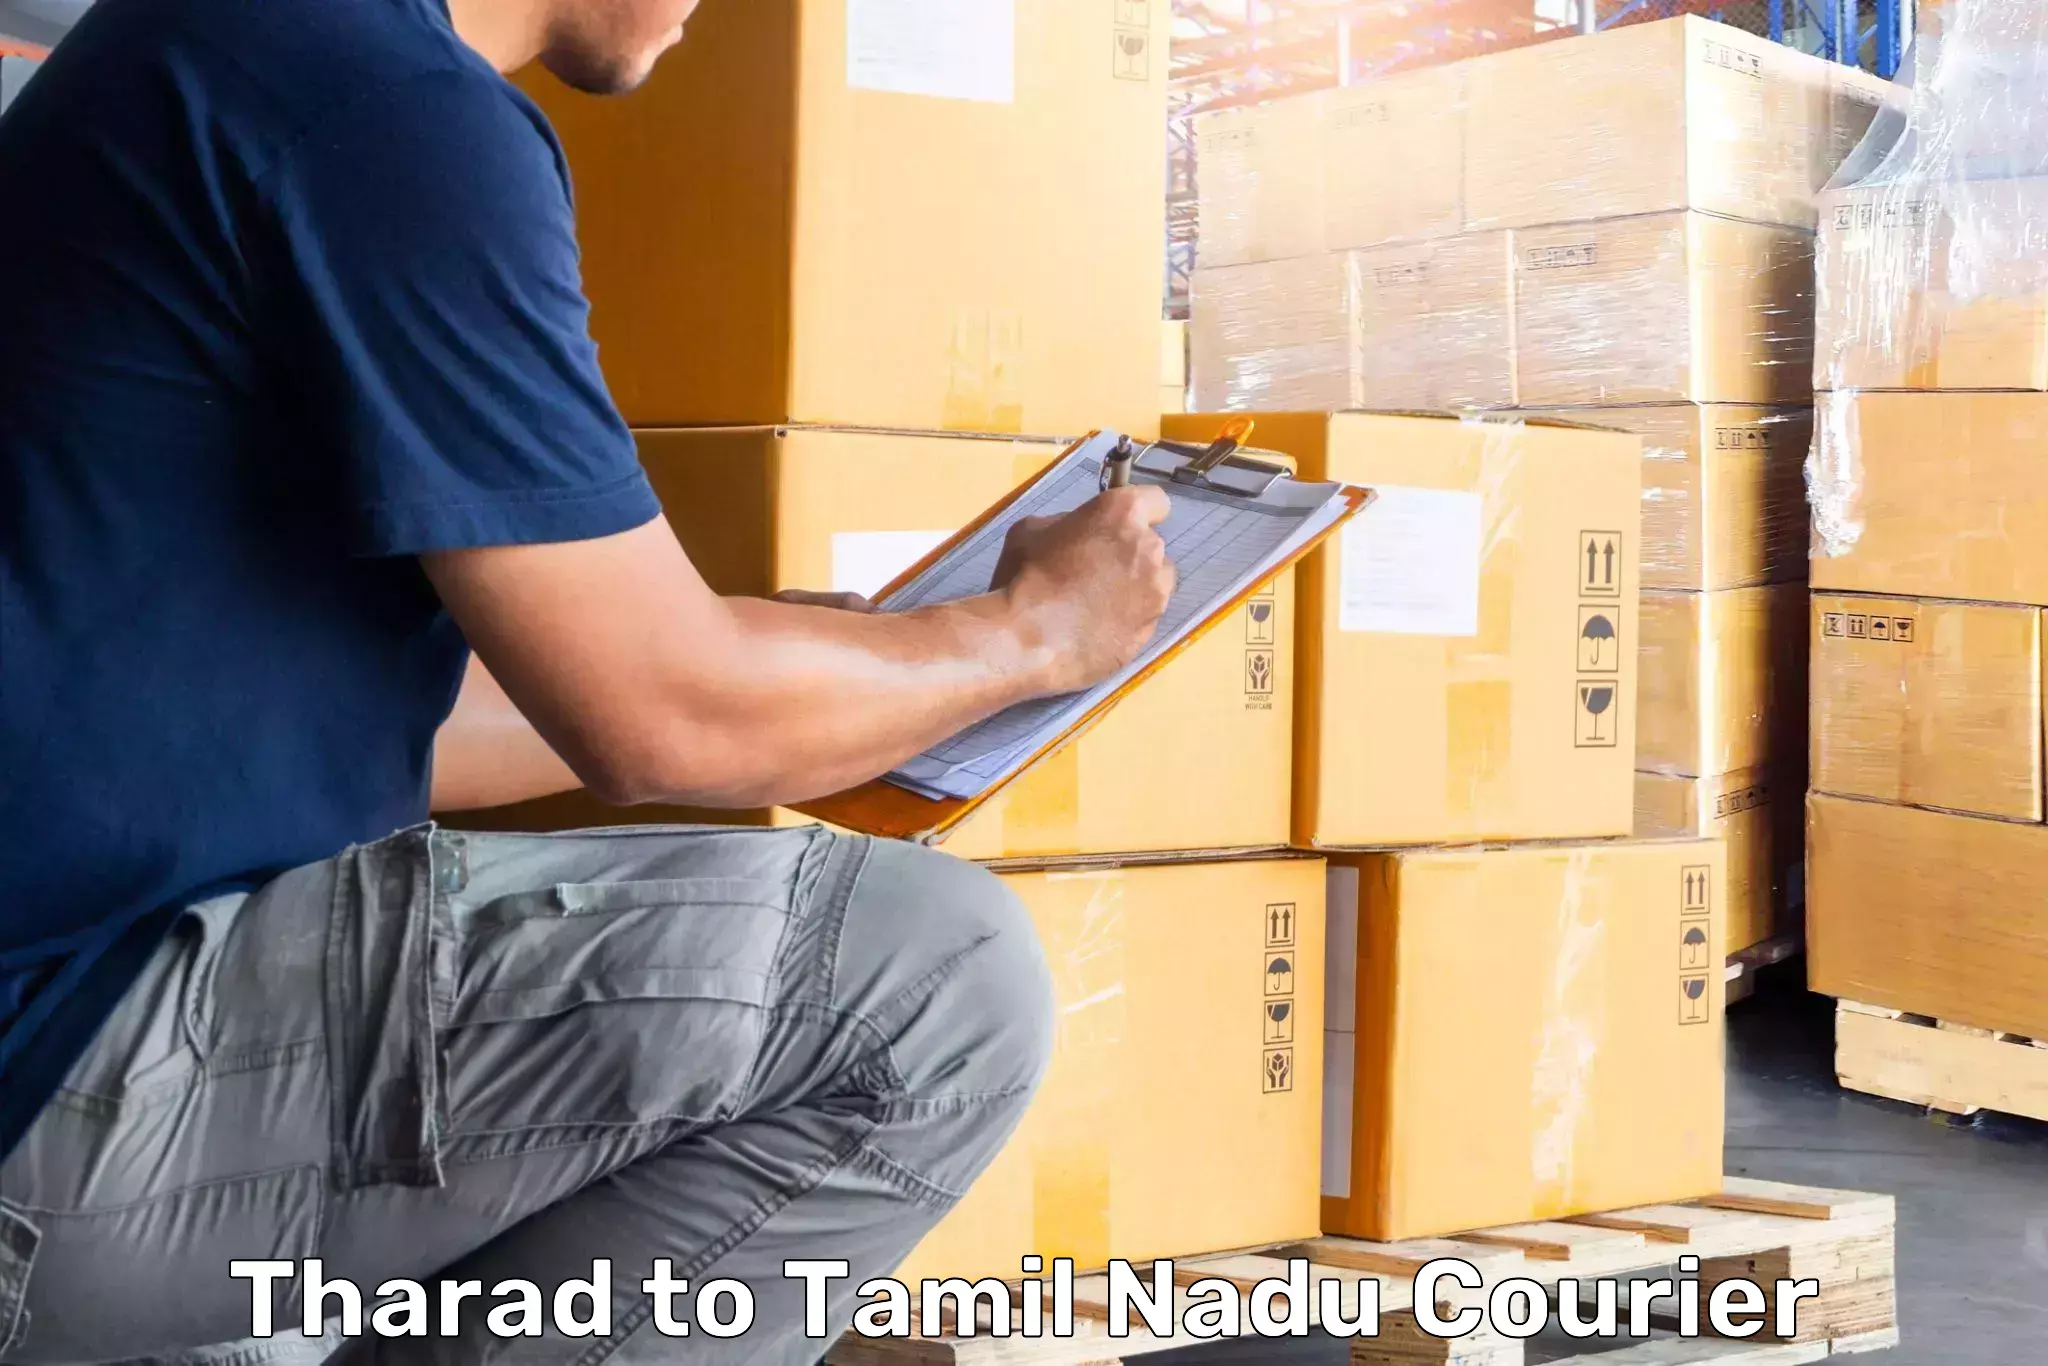 Luggage shipment specialists Tharad to Aranthangi